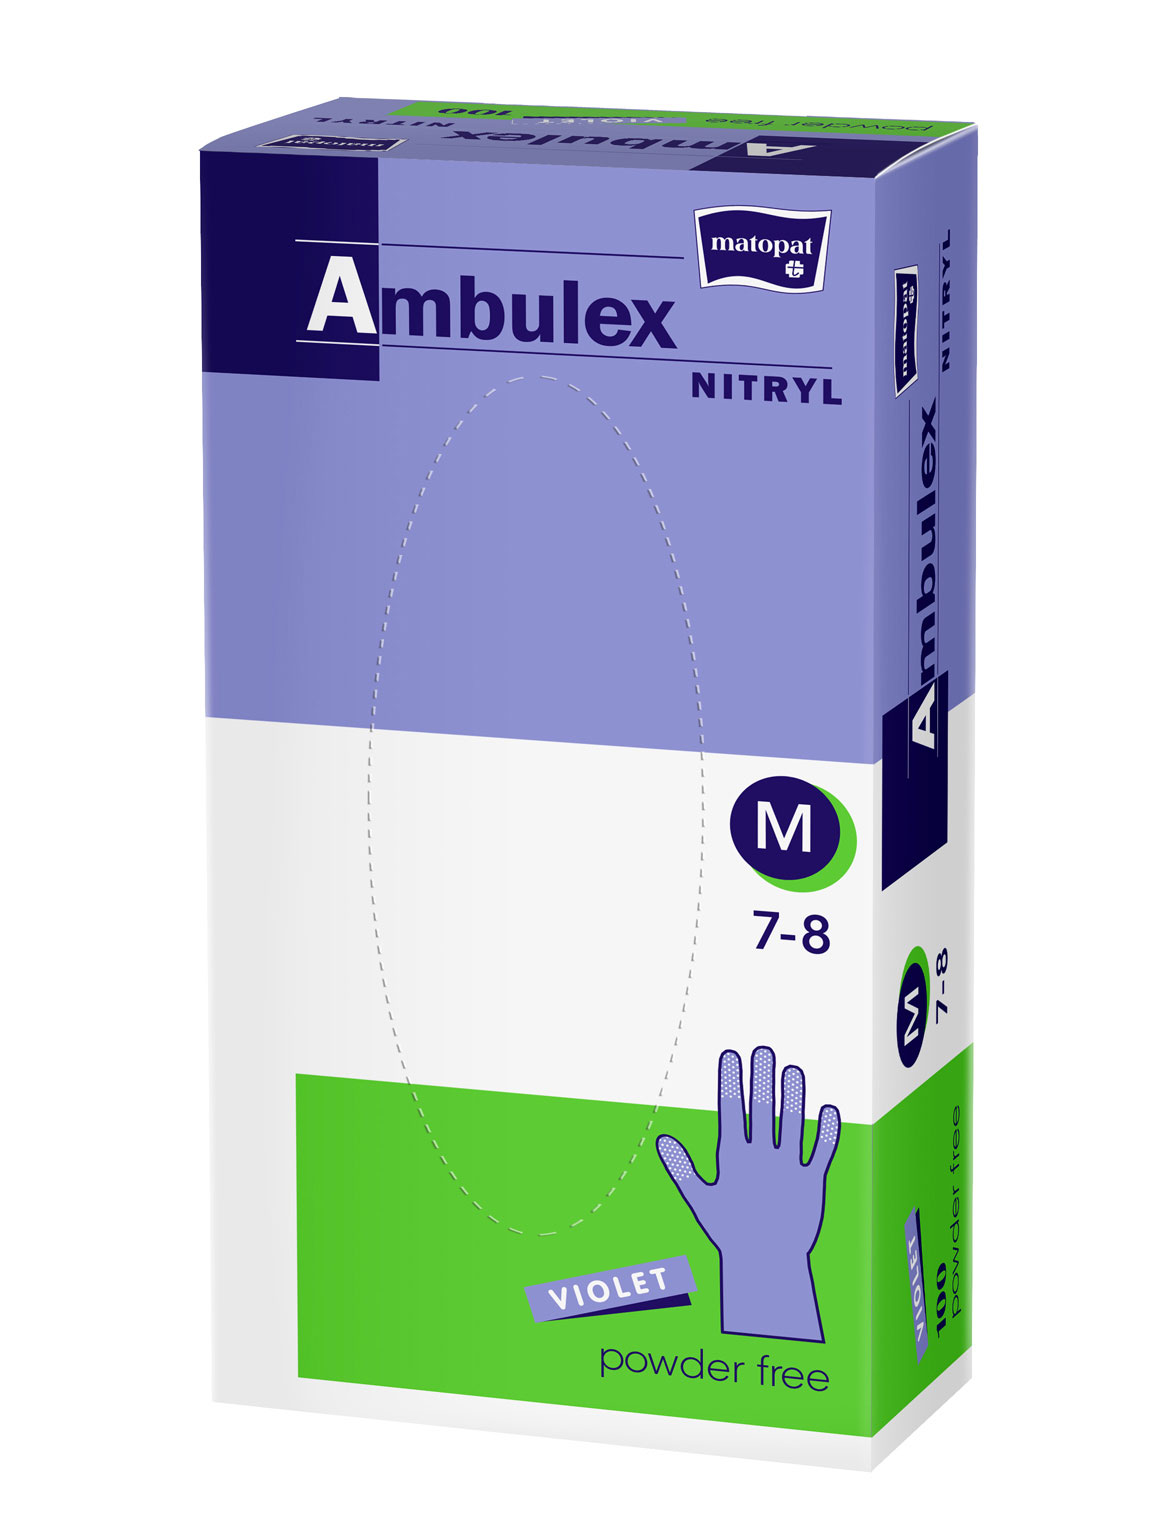 Ambulex Nitril Einweghandschuhe 100 Stück - Violet - Größe M